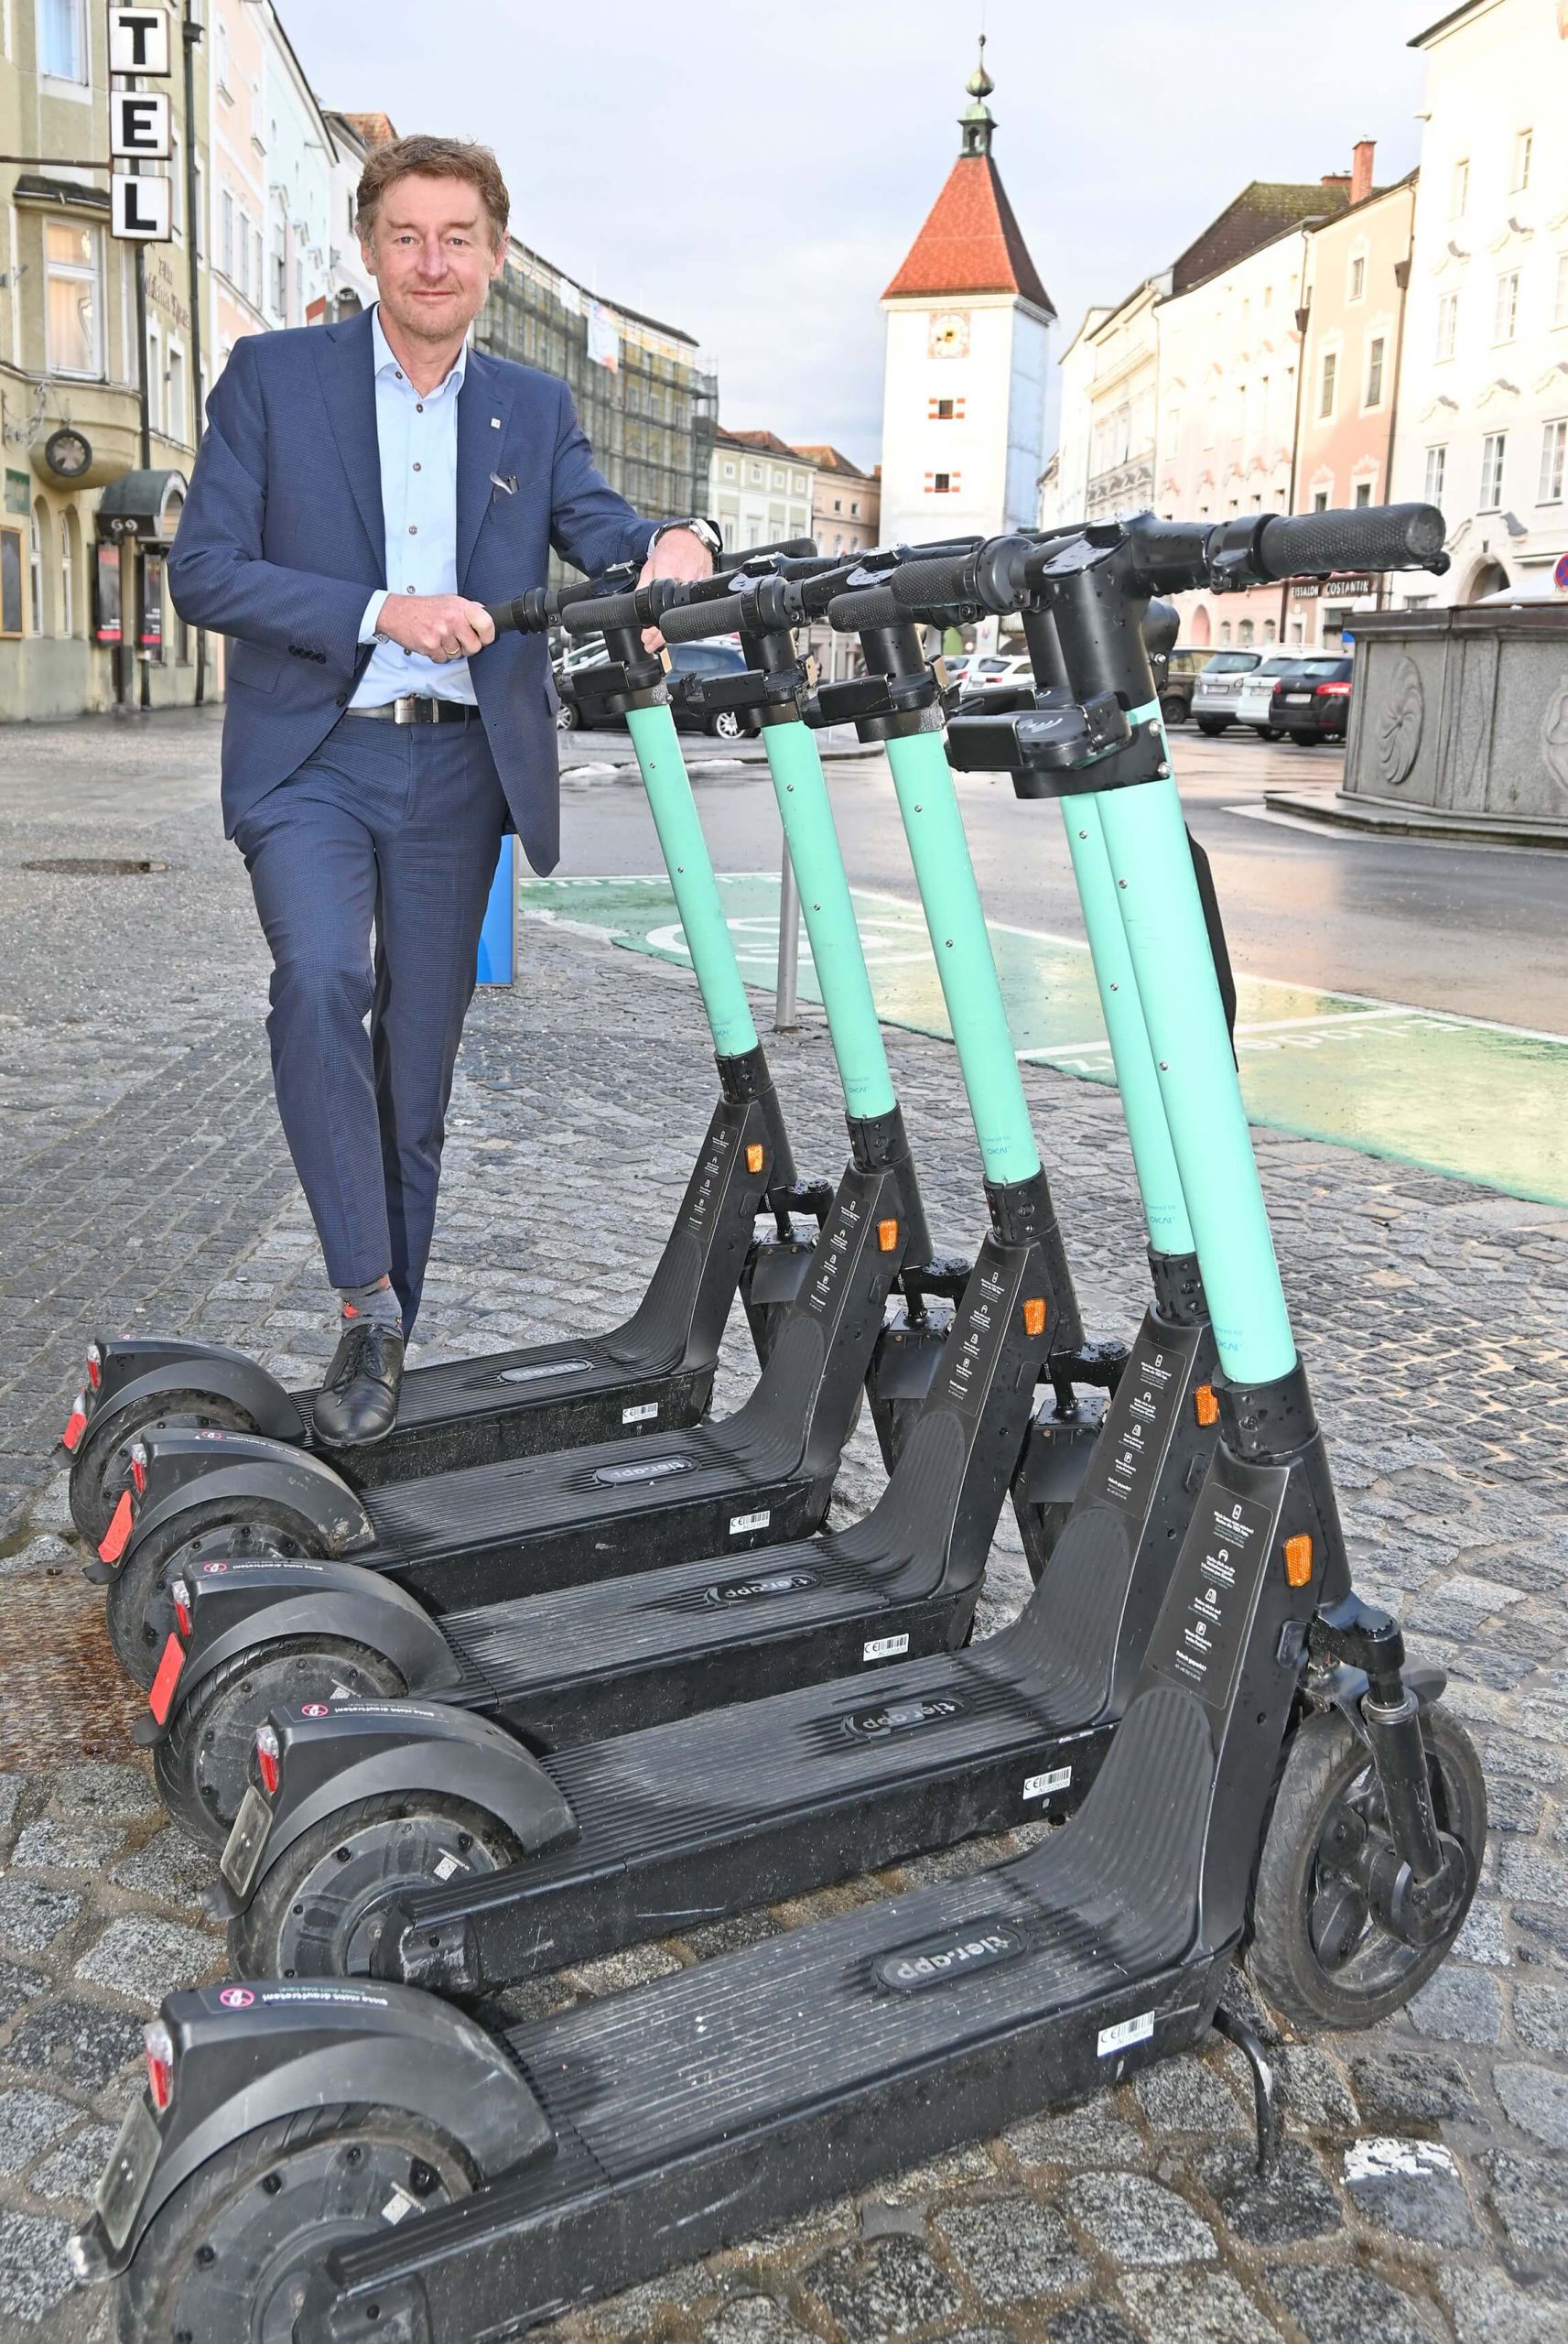 Vizebürgermeister Gerhard Kroiß steht hinter einer Gruppe von E-Scootern auf dem Stadtplatz, im Hintergrund ist der Ledererturm zu sehen